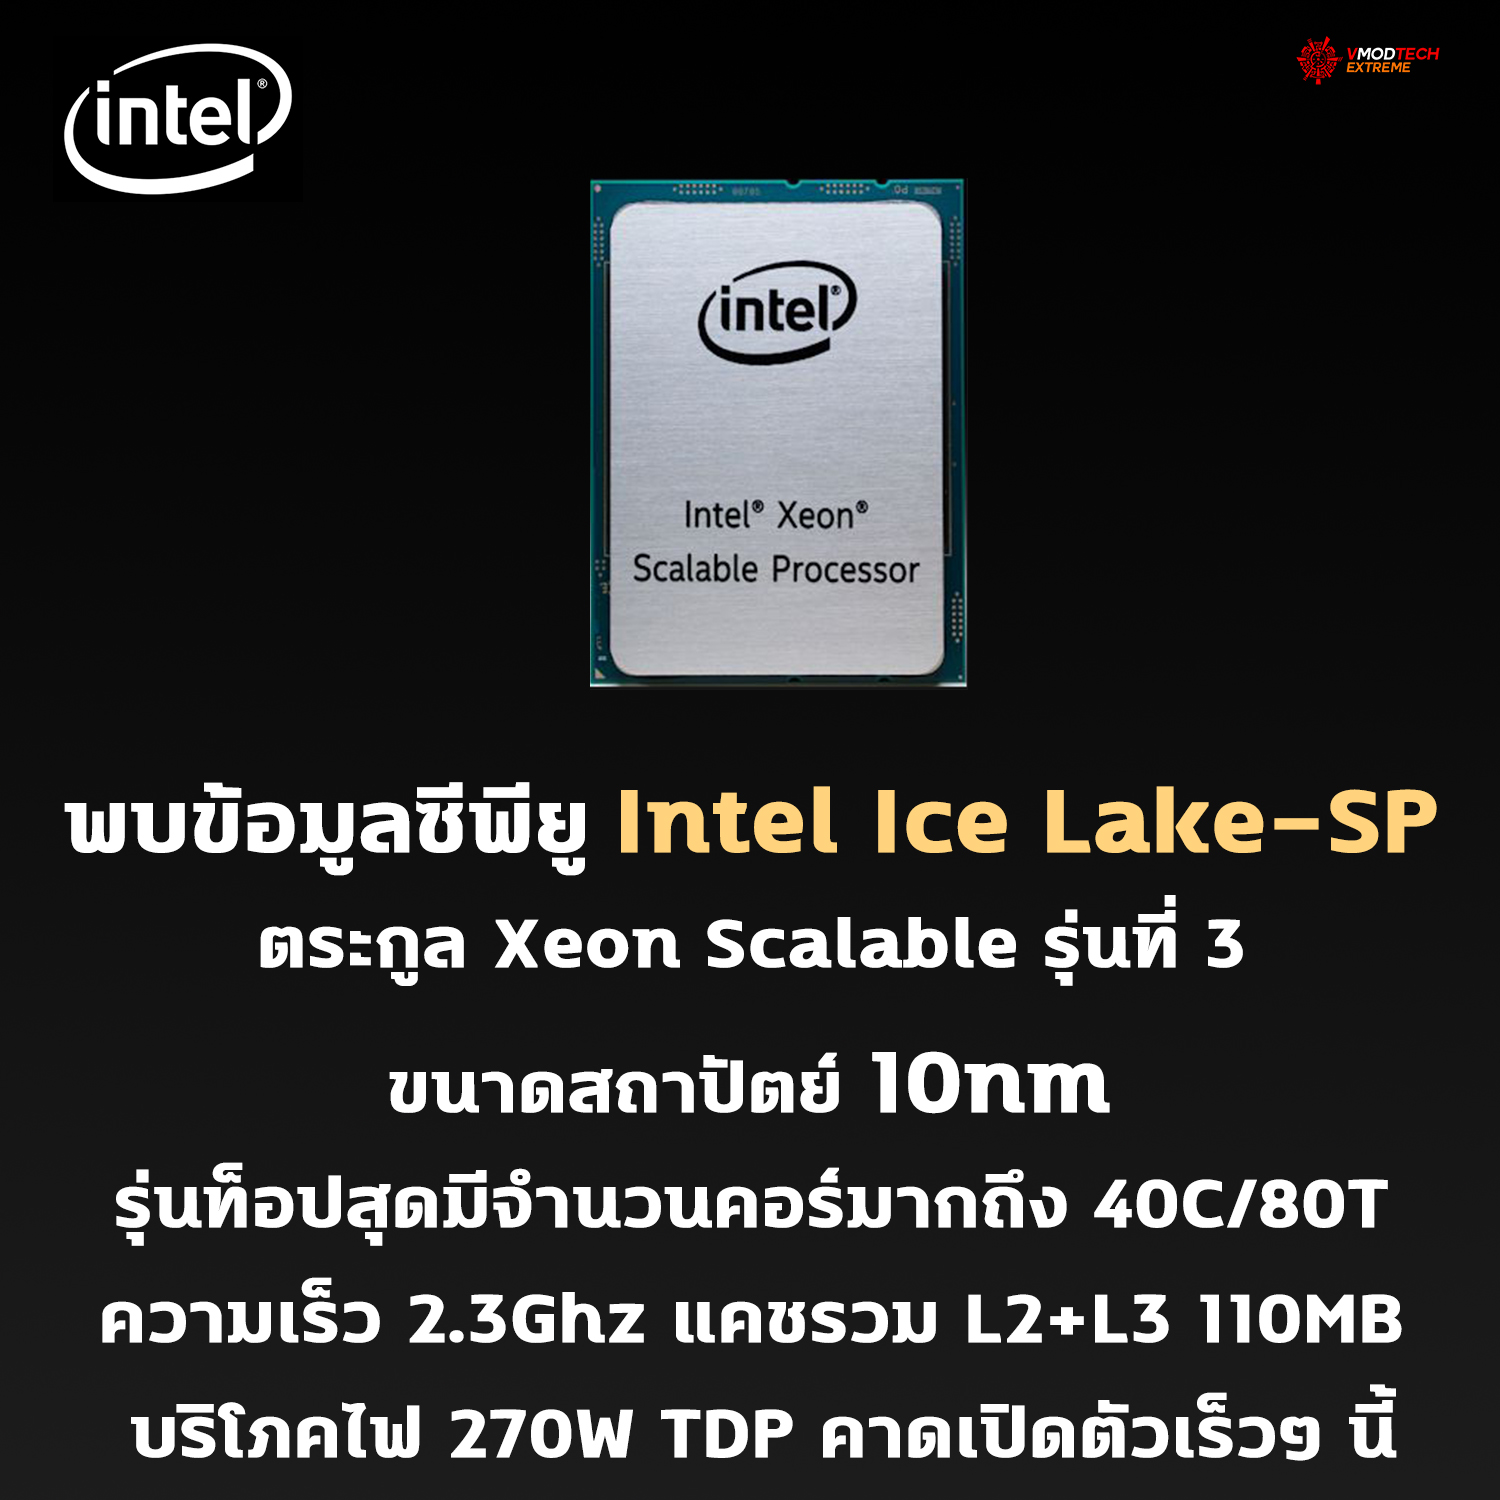 intel ice lake sp 10nm 3rd gen พบข้อมูลซีพียู Intel Ice Lake SP ตระกูล Xeon Scalable รุ่นที่ 3 